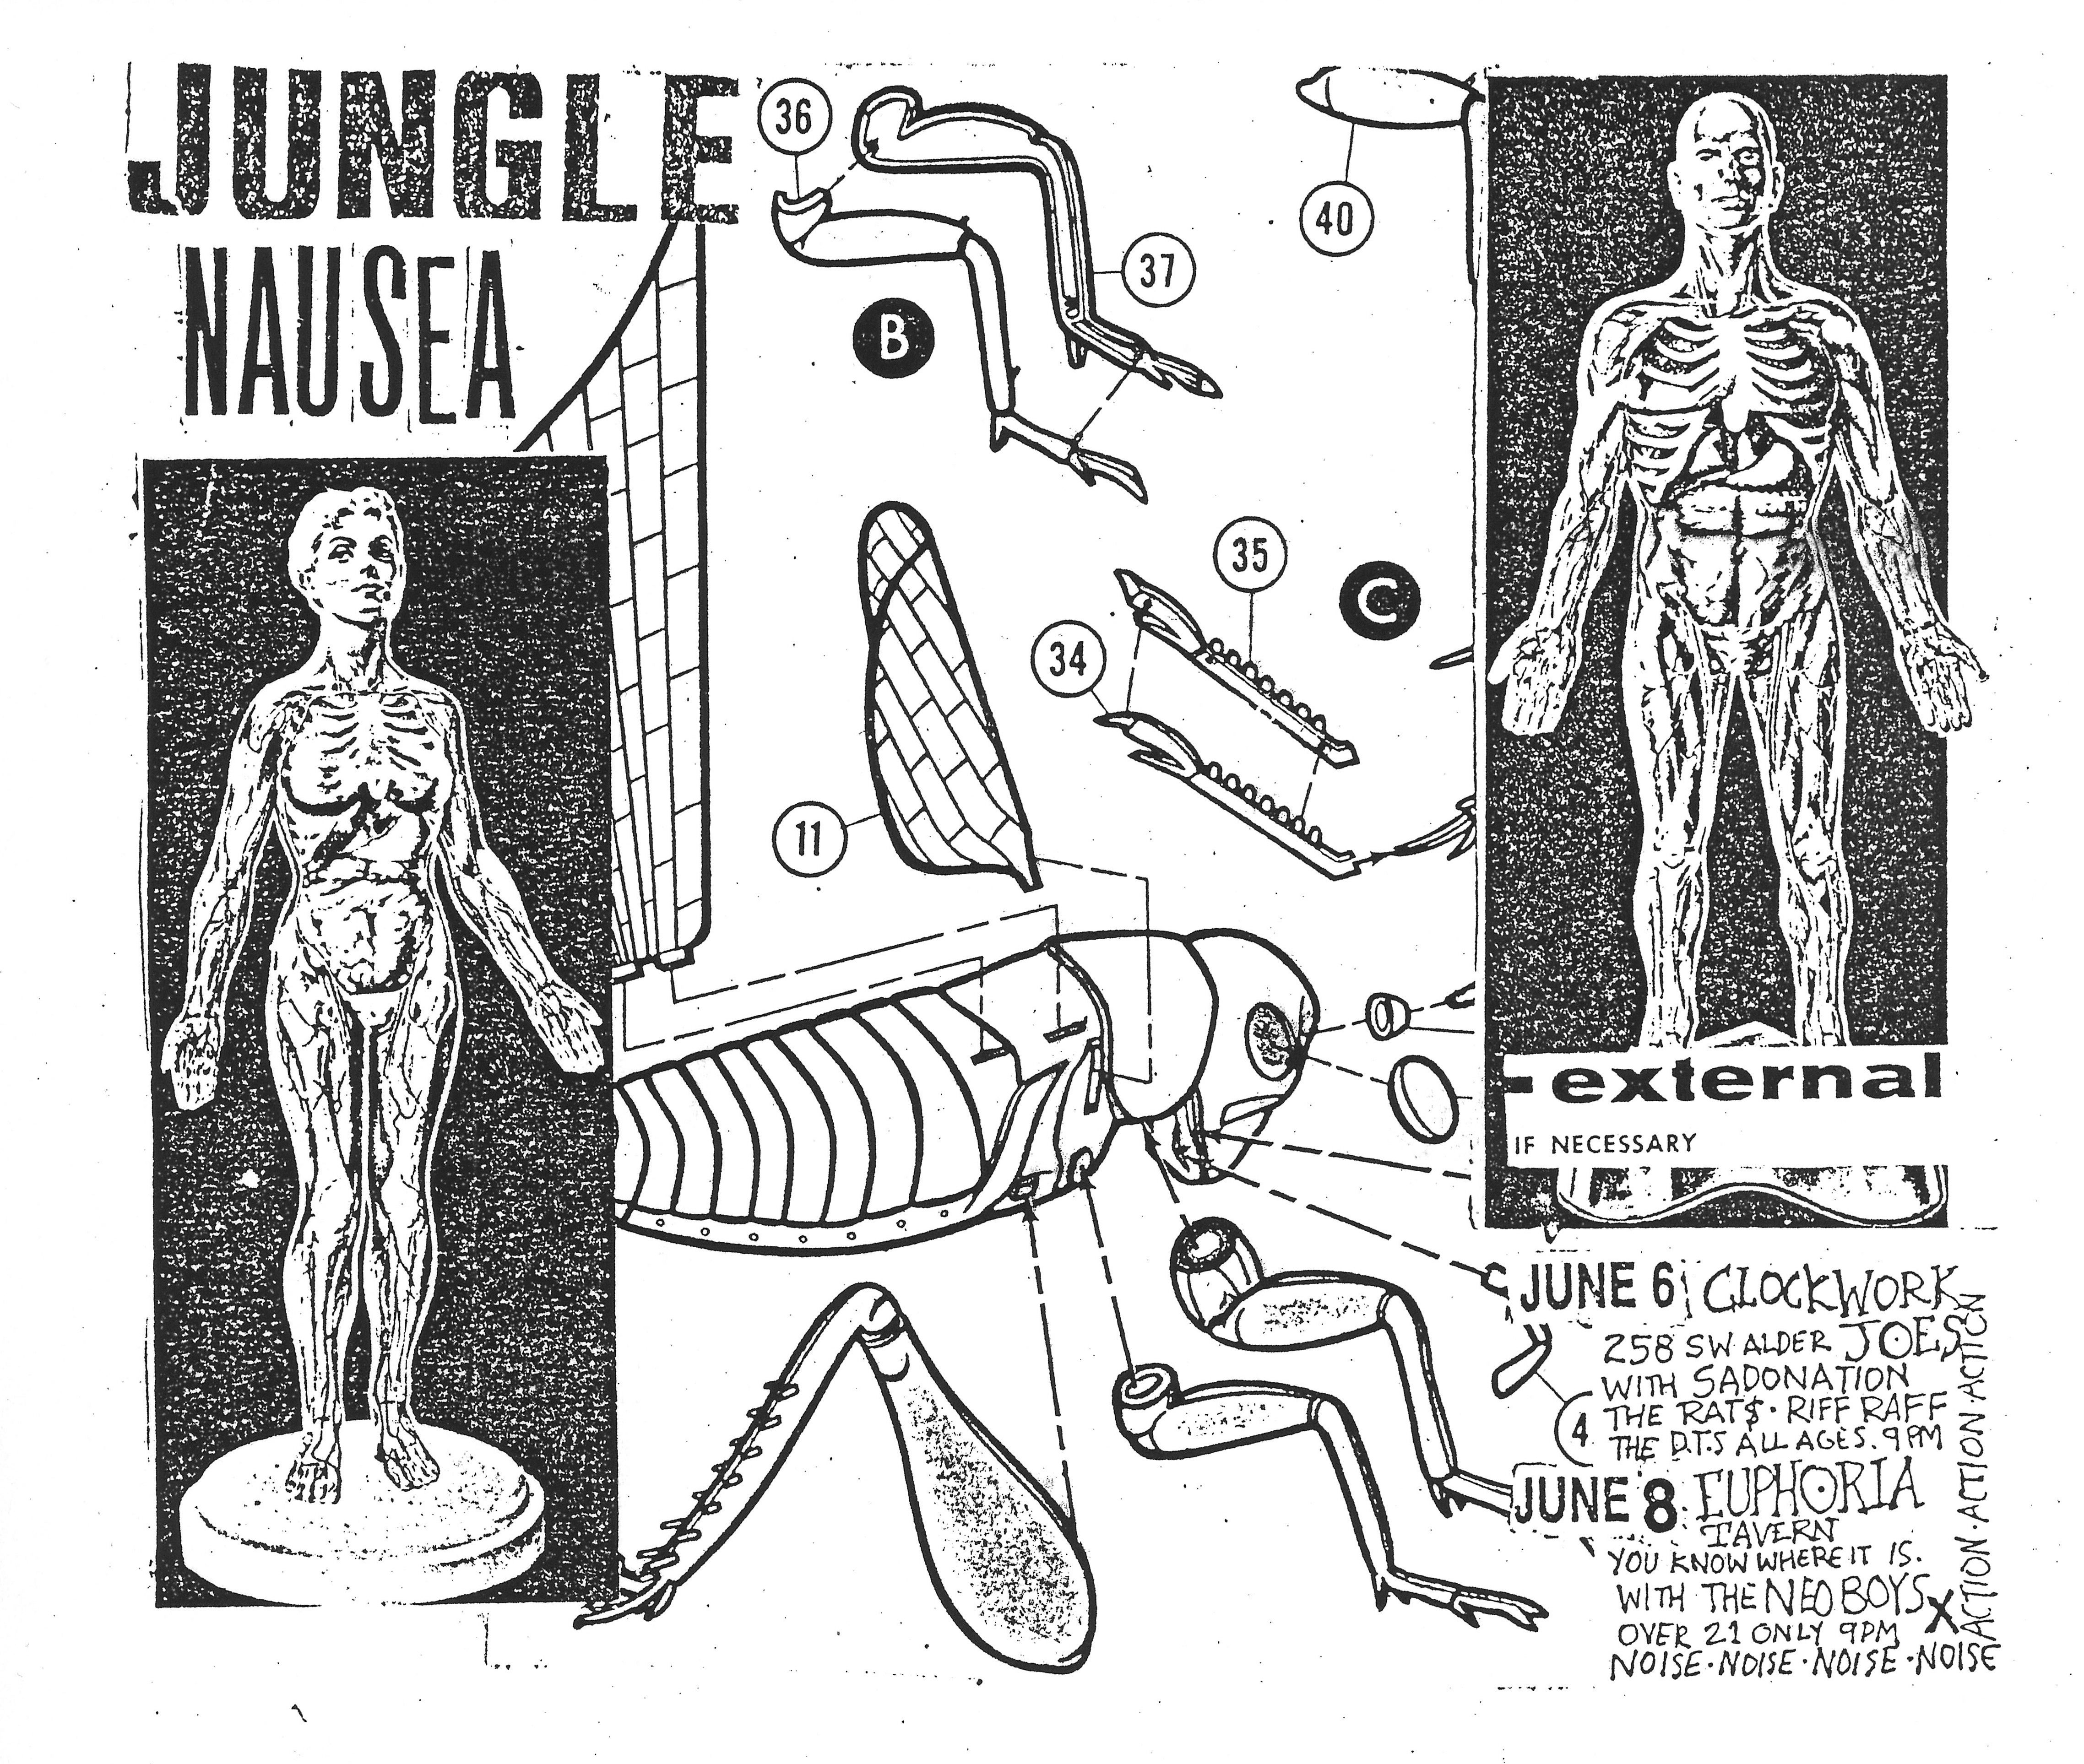 MXP-46.1 Jungle Nausea 1981 Clockwork Joes & Euphoria Tavern  Jun 8 Concert Poster